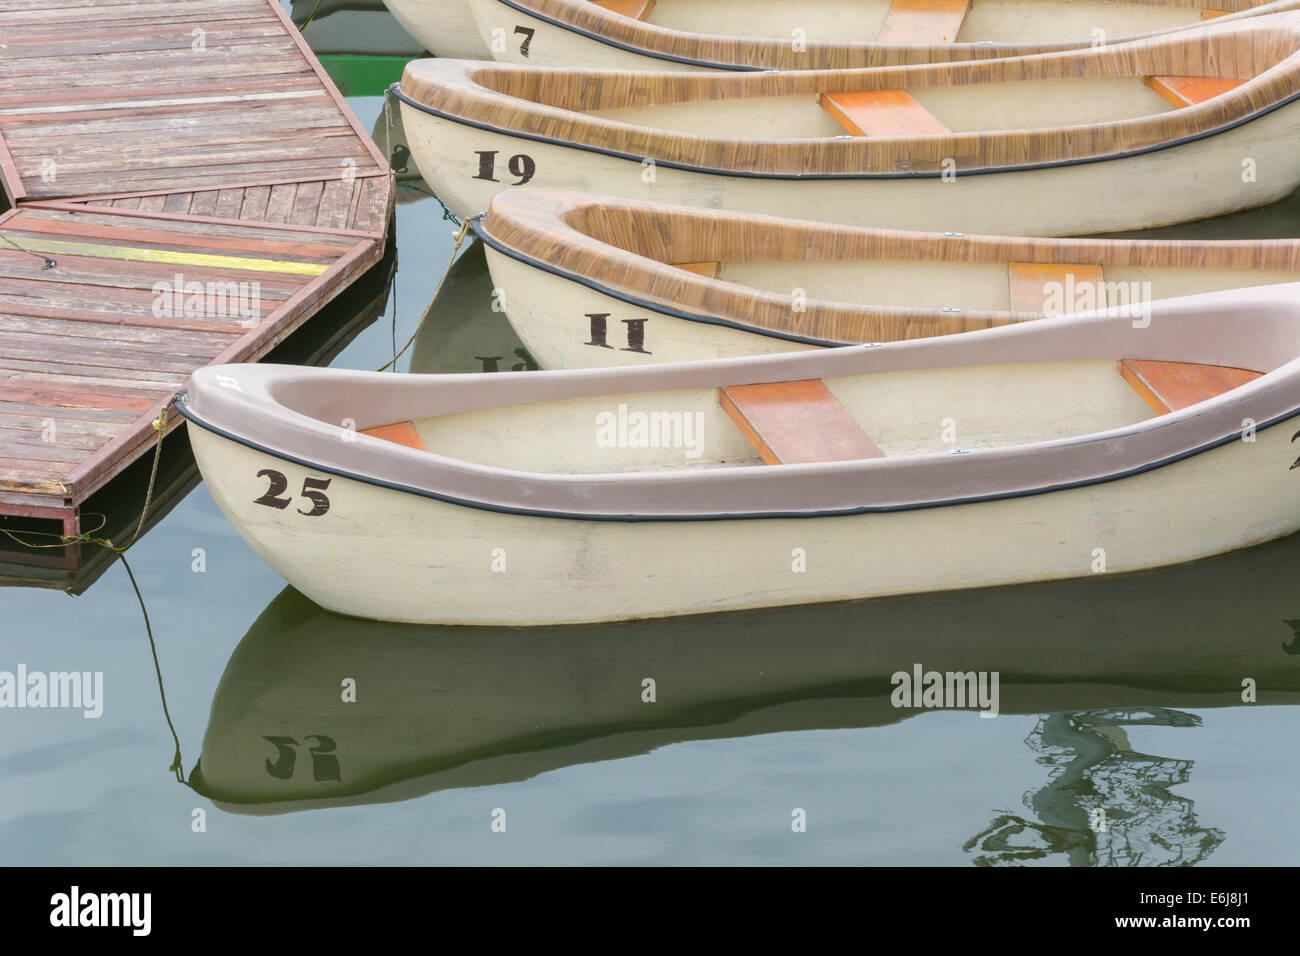 Plaisir numérotés barques attaché sur un lac Banque D'Images